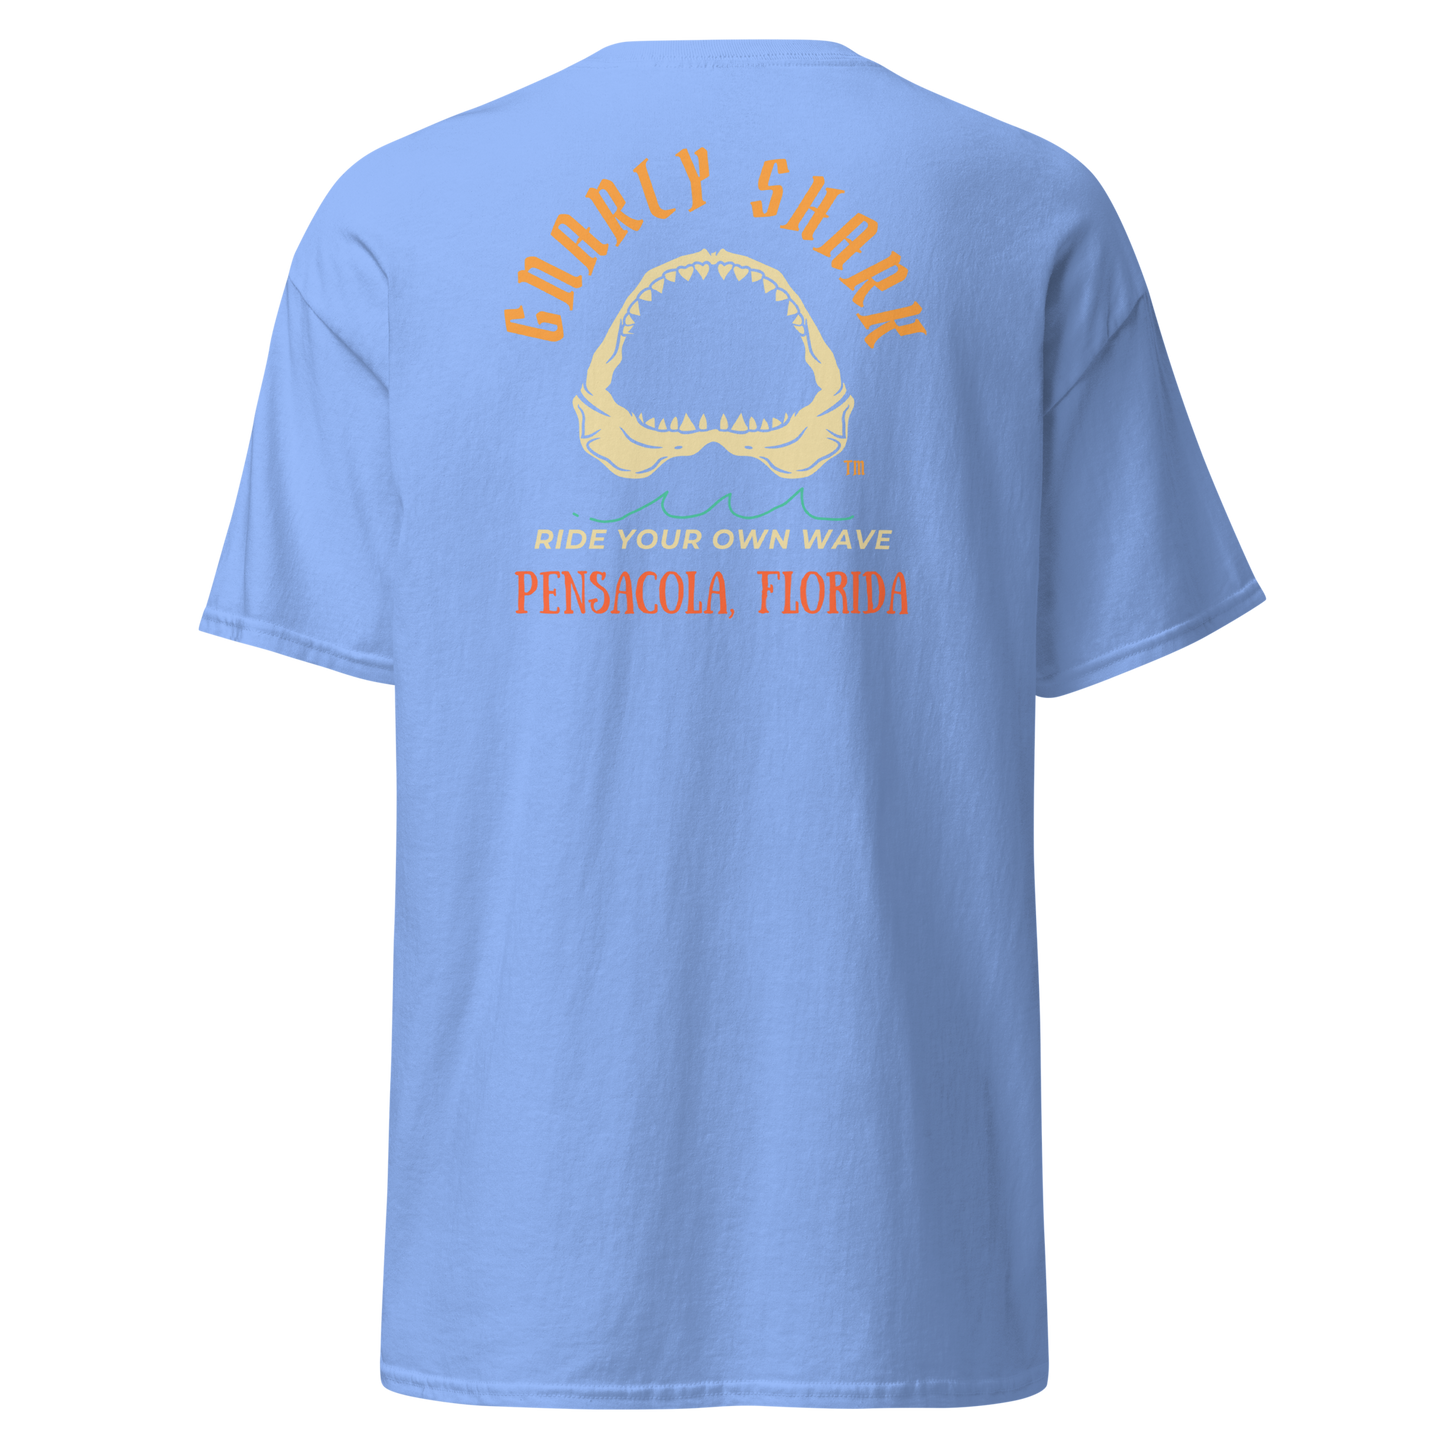 Gnarly Shark Pensacola Florida T-Shirt - Front / Back - Gildan classic 5000